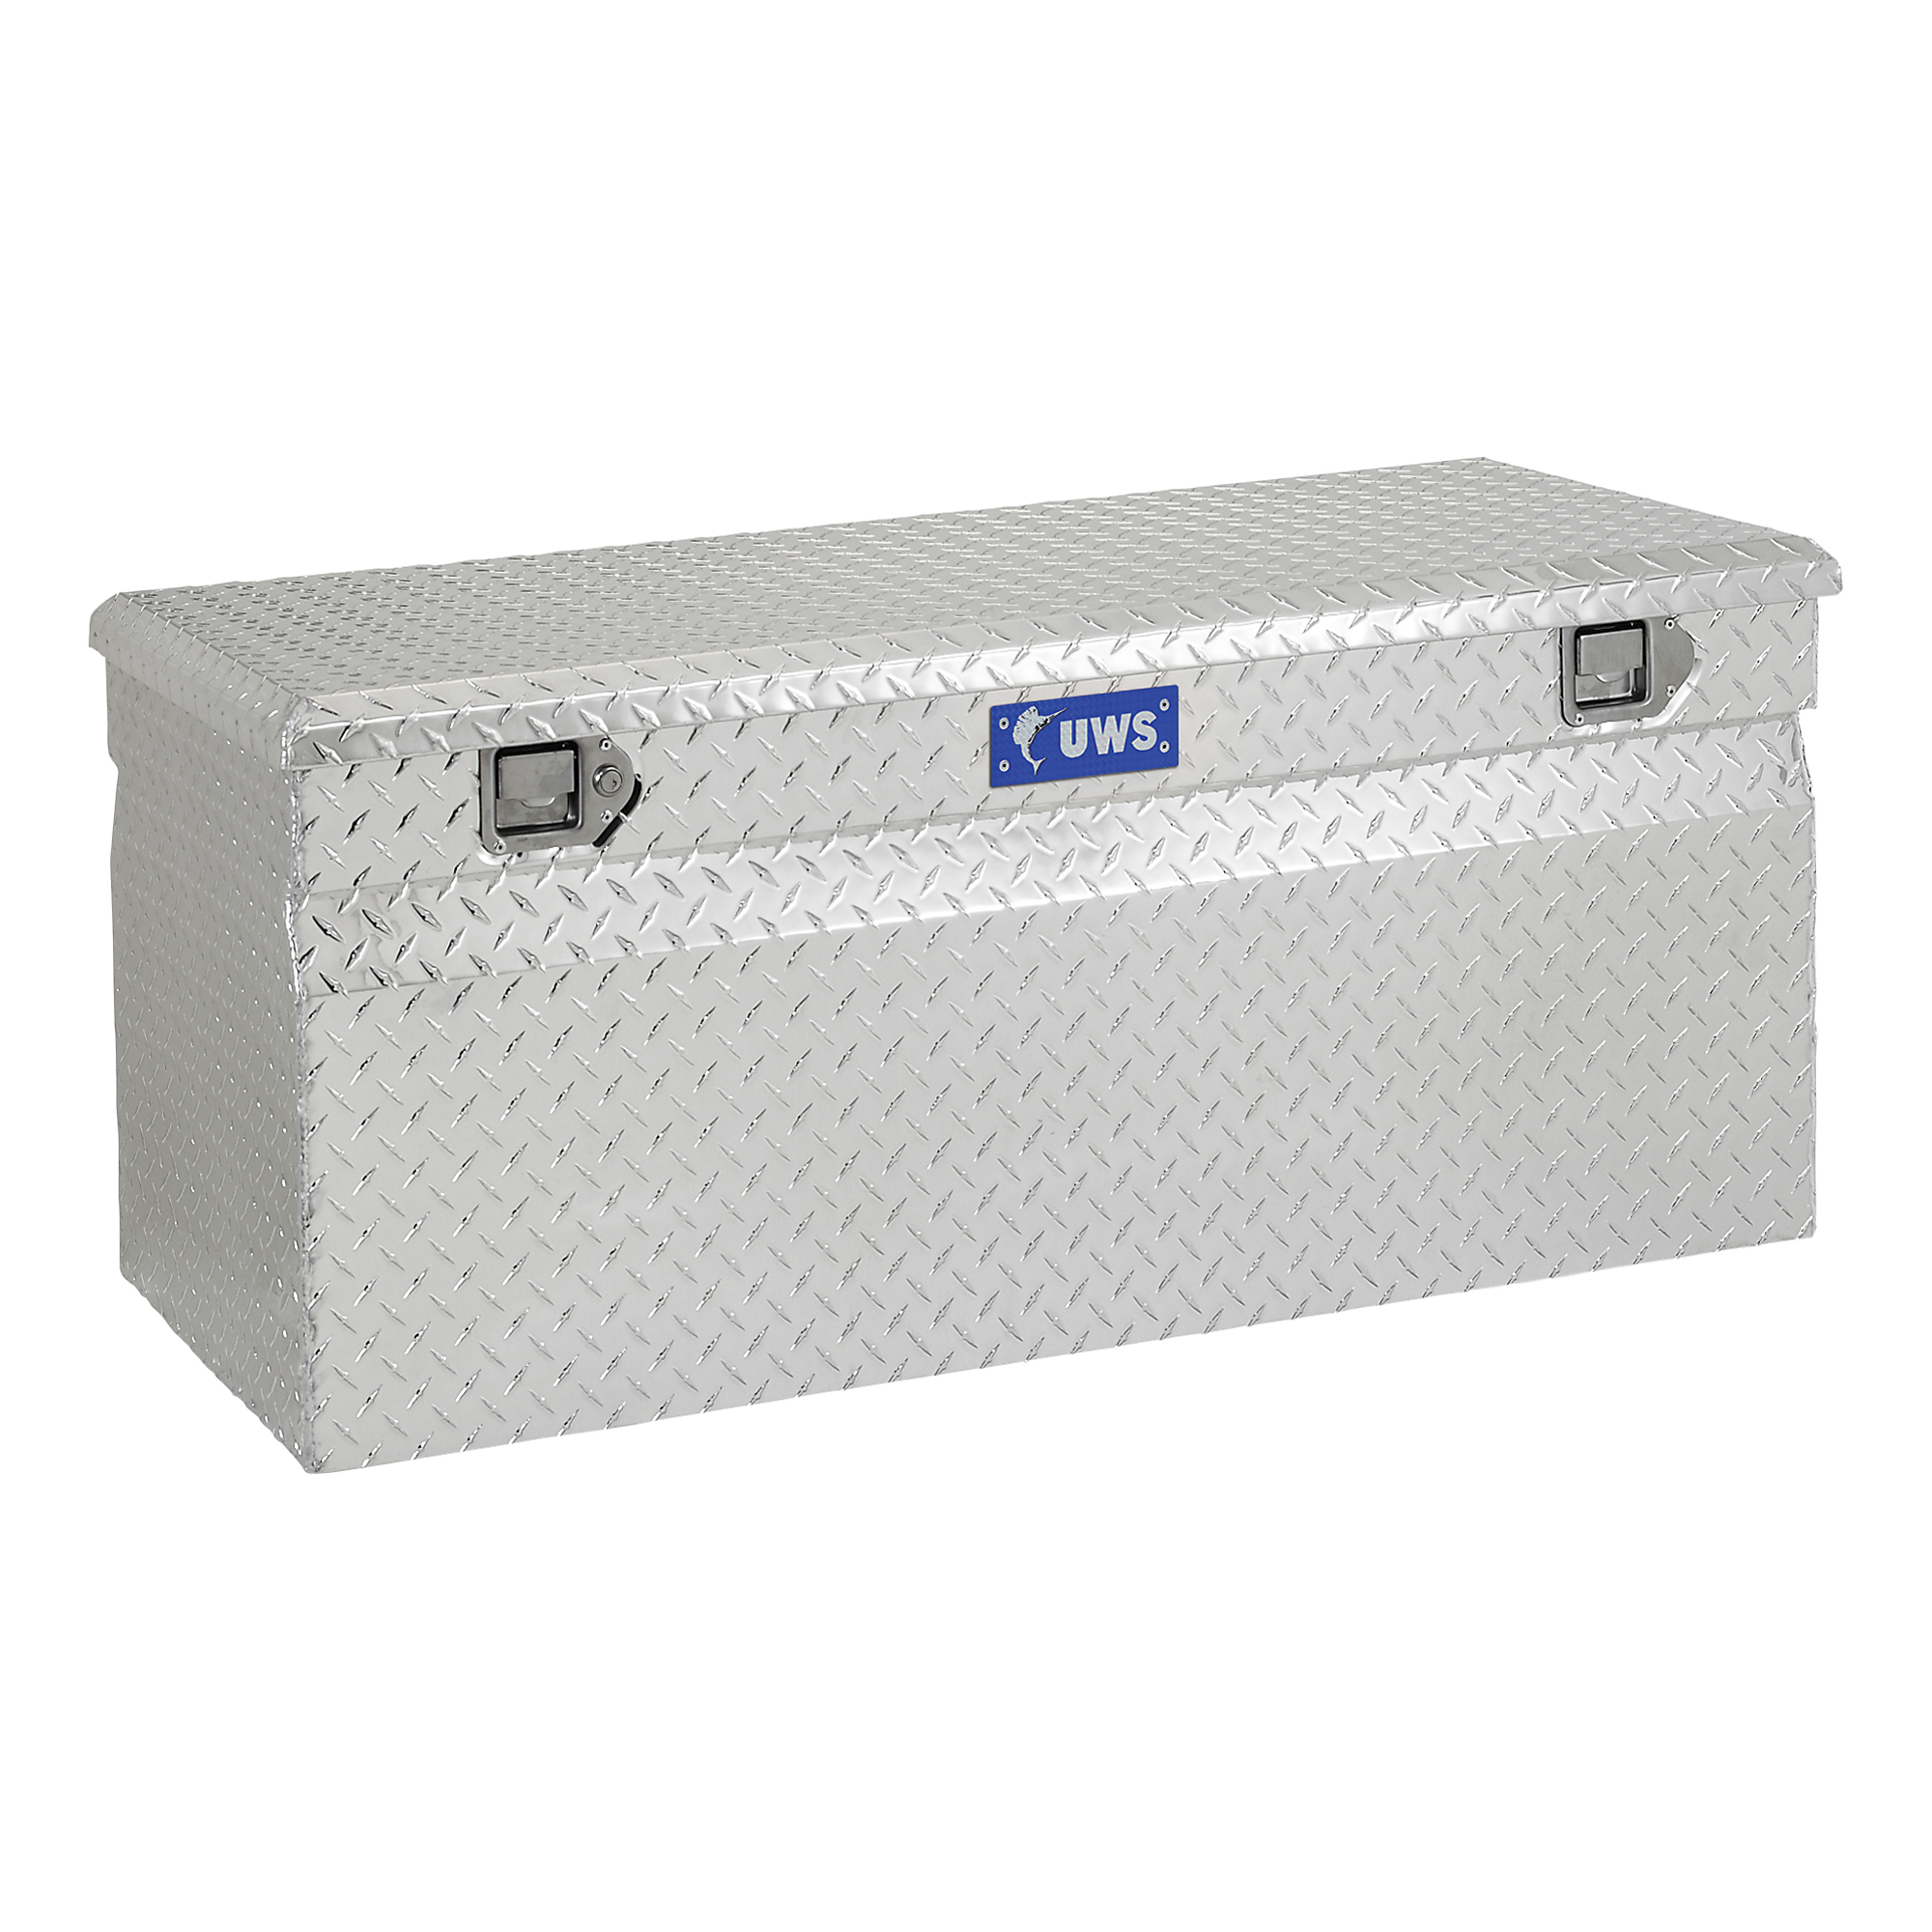 UWS, 42Inch Utility Chest Box, Width 42.875 in, Material Aluminum, Color Finish Bright Aluminum, Model EC20201